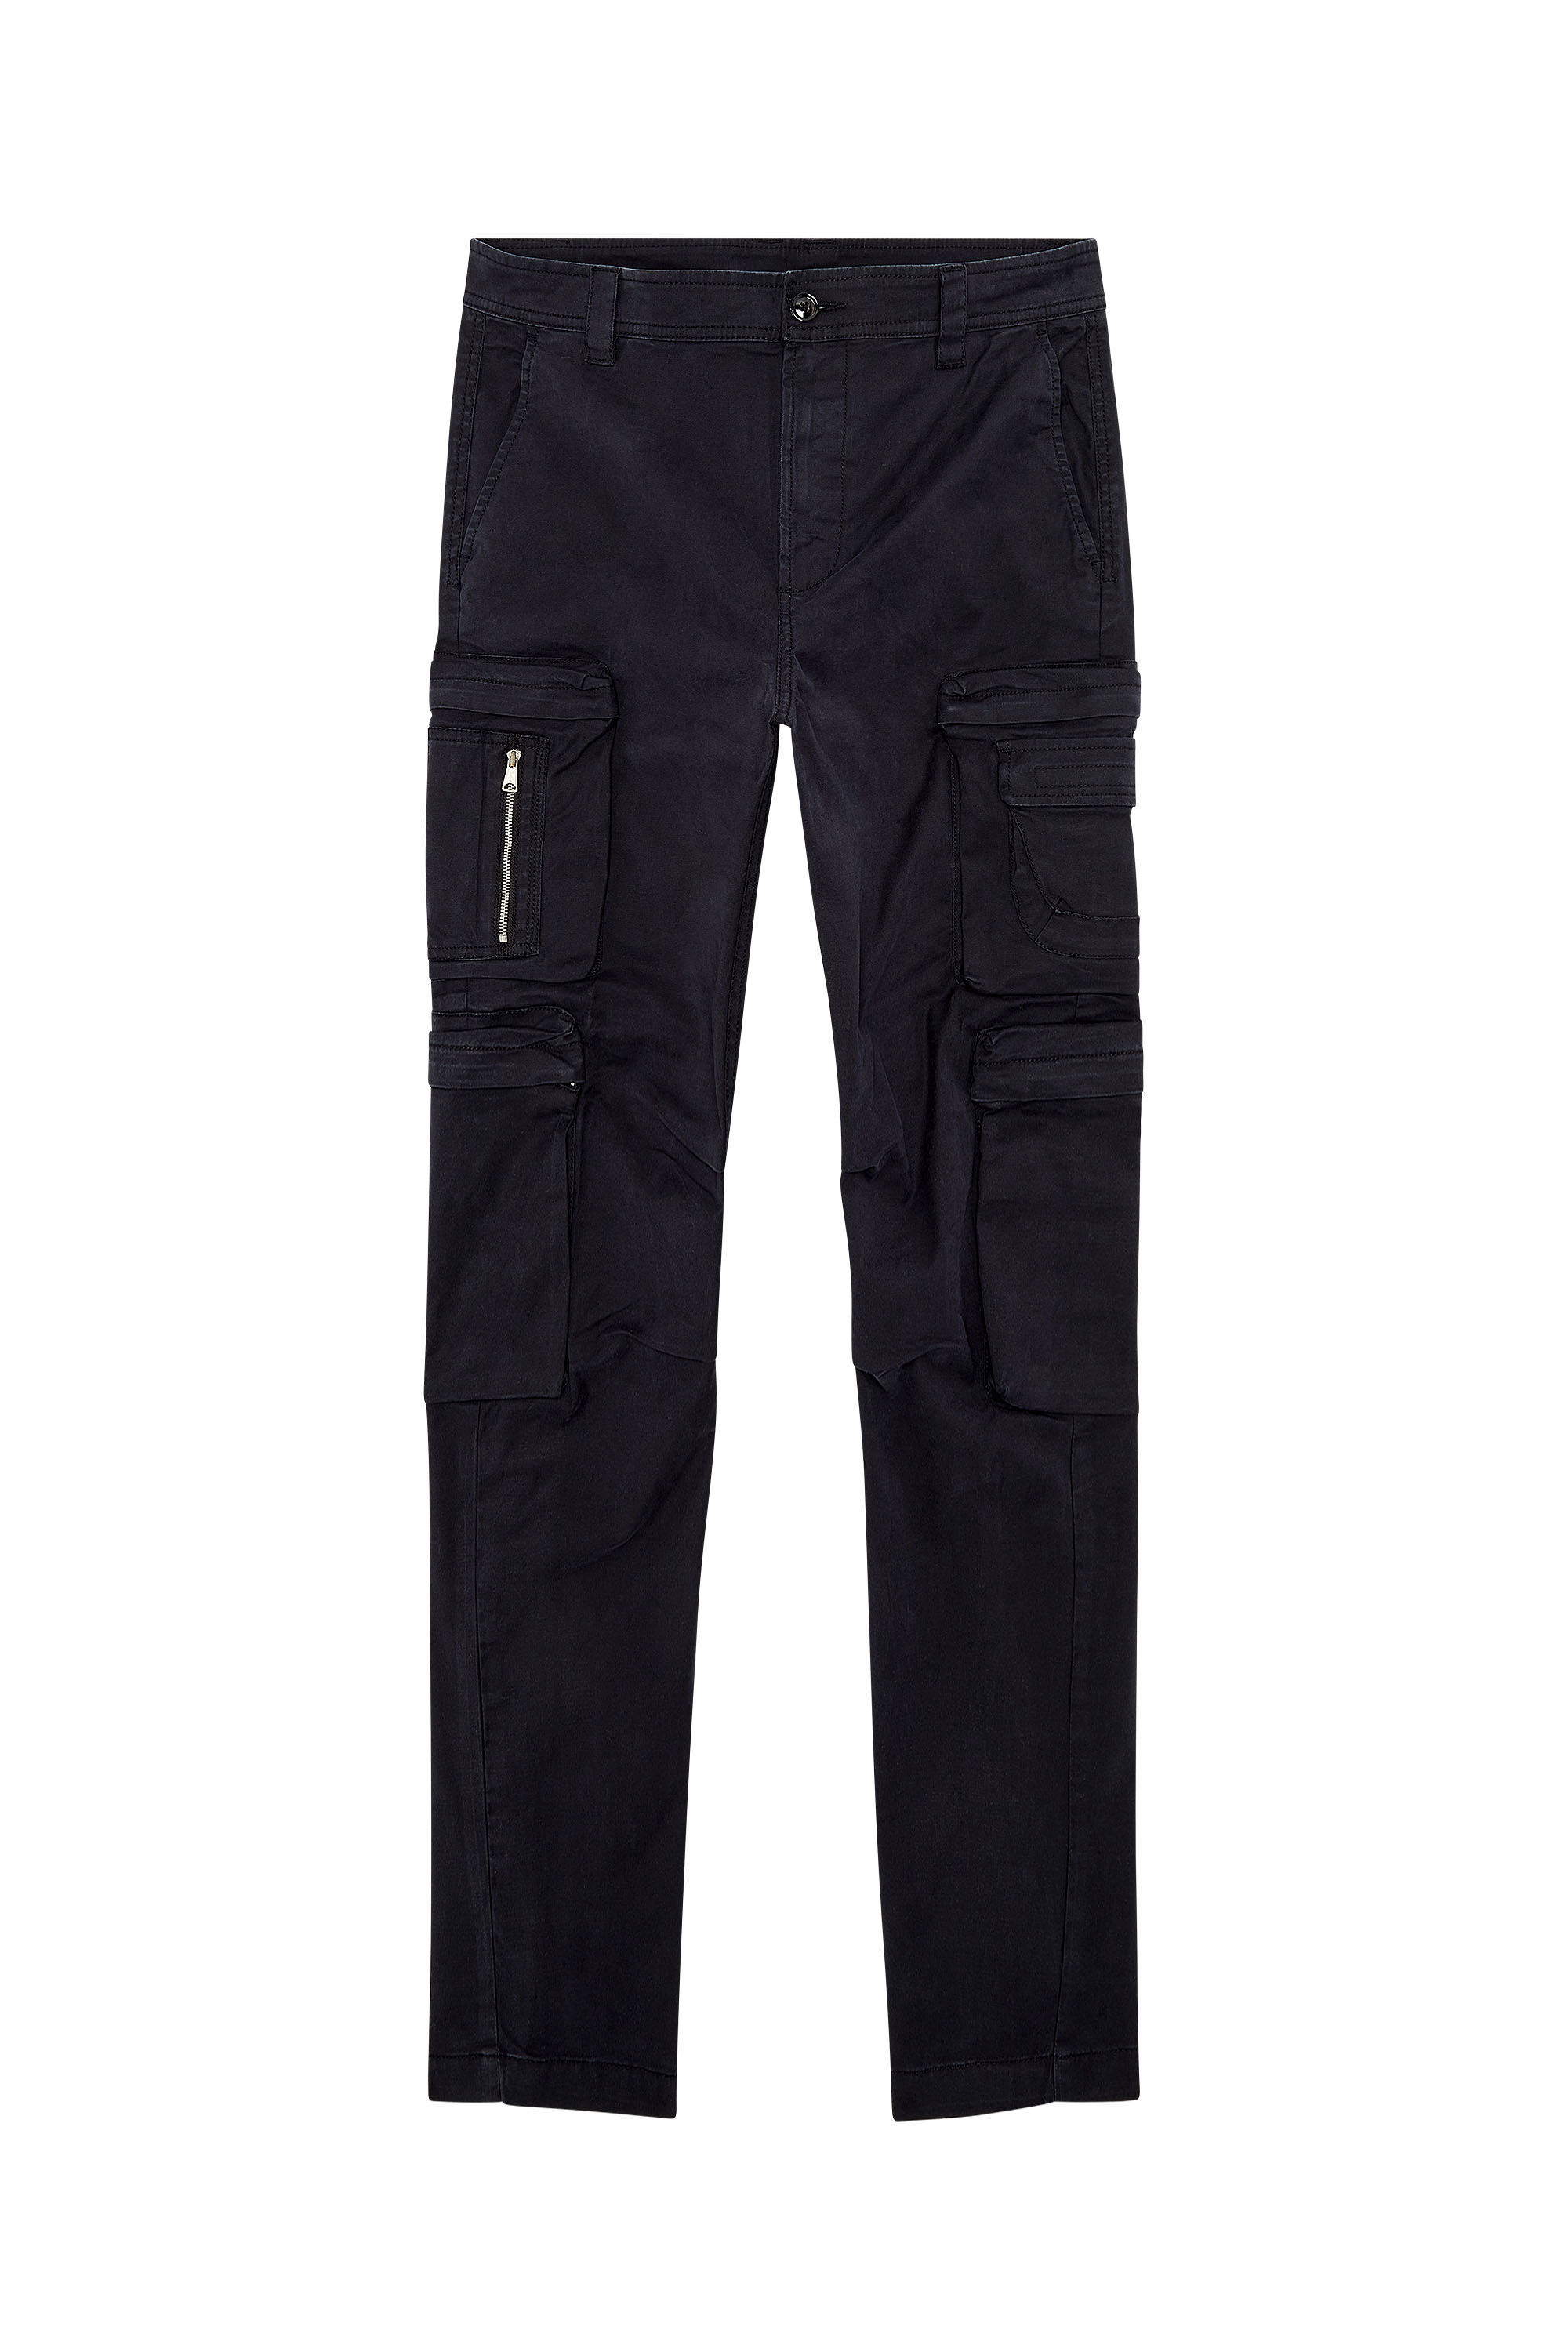 Men's Cargo pants with zip pocket | Black | Diesel